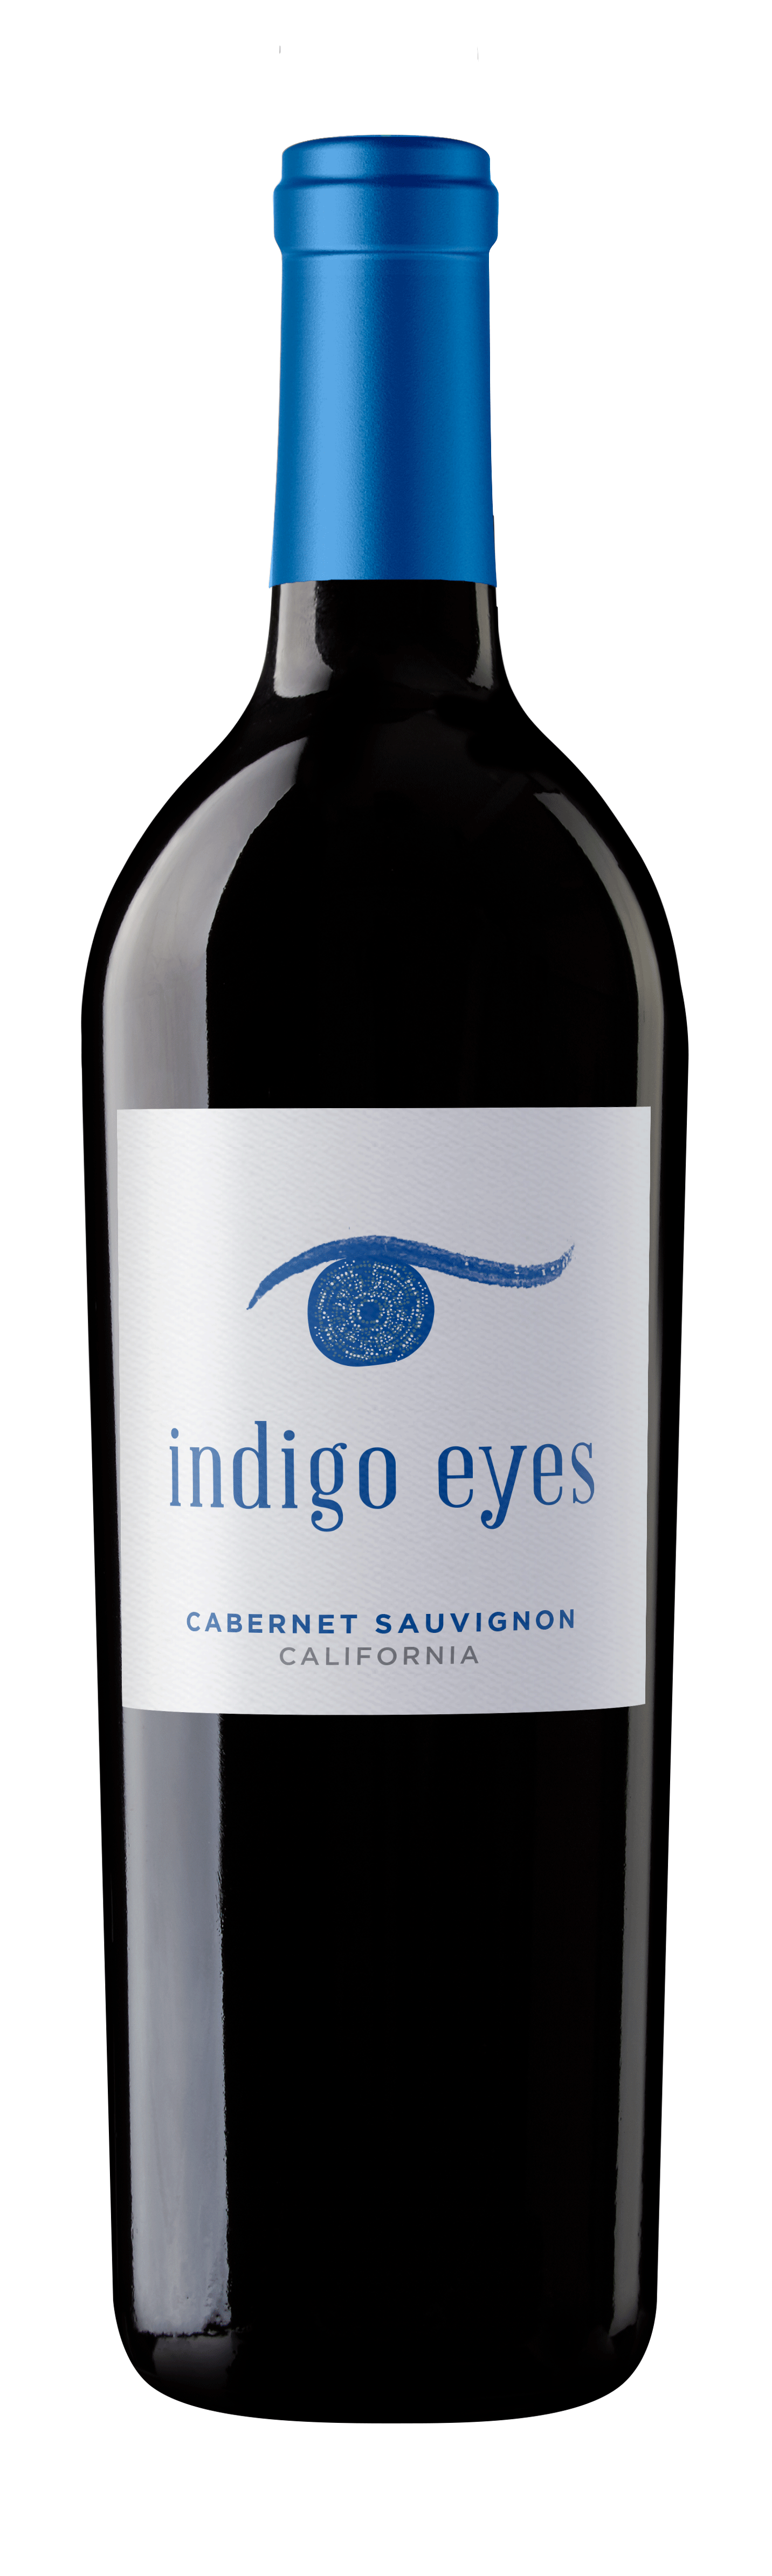 Indigo Eyes Cabernet Sauvignon